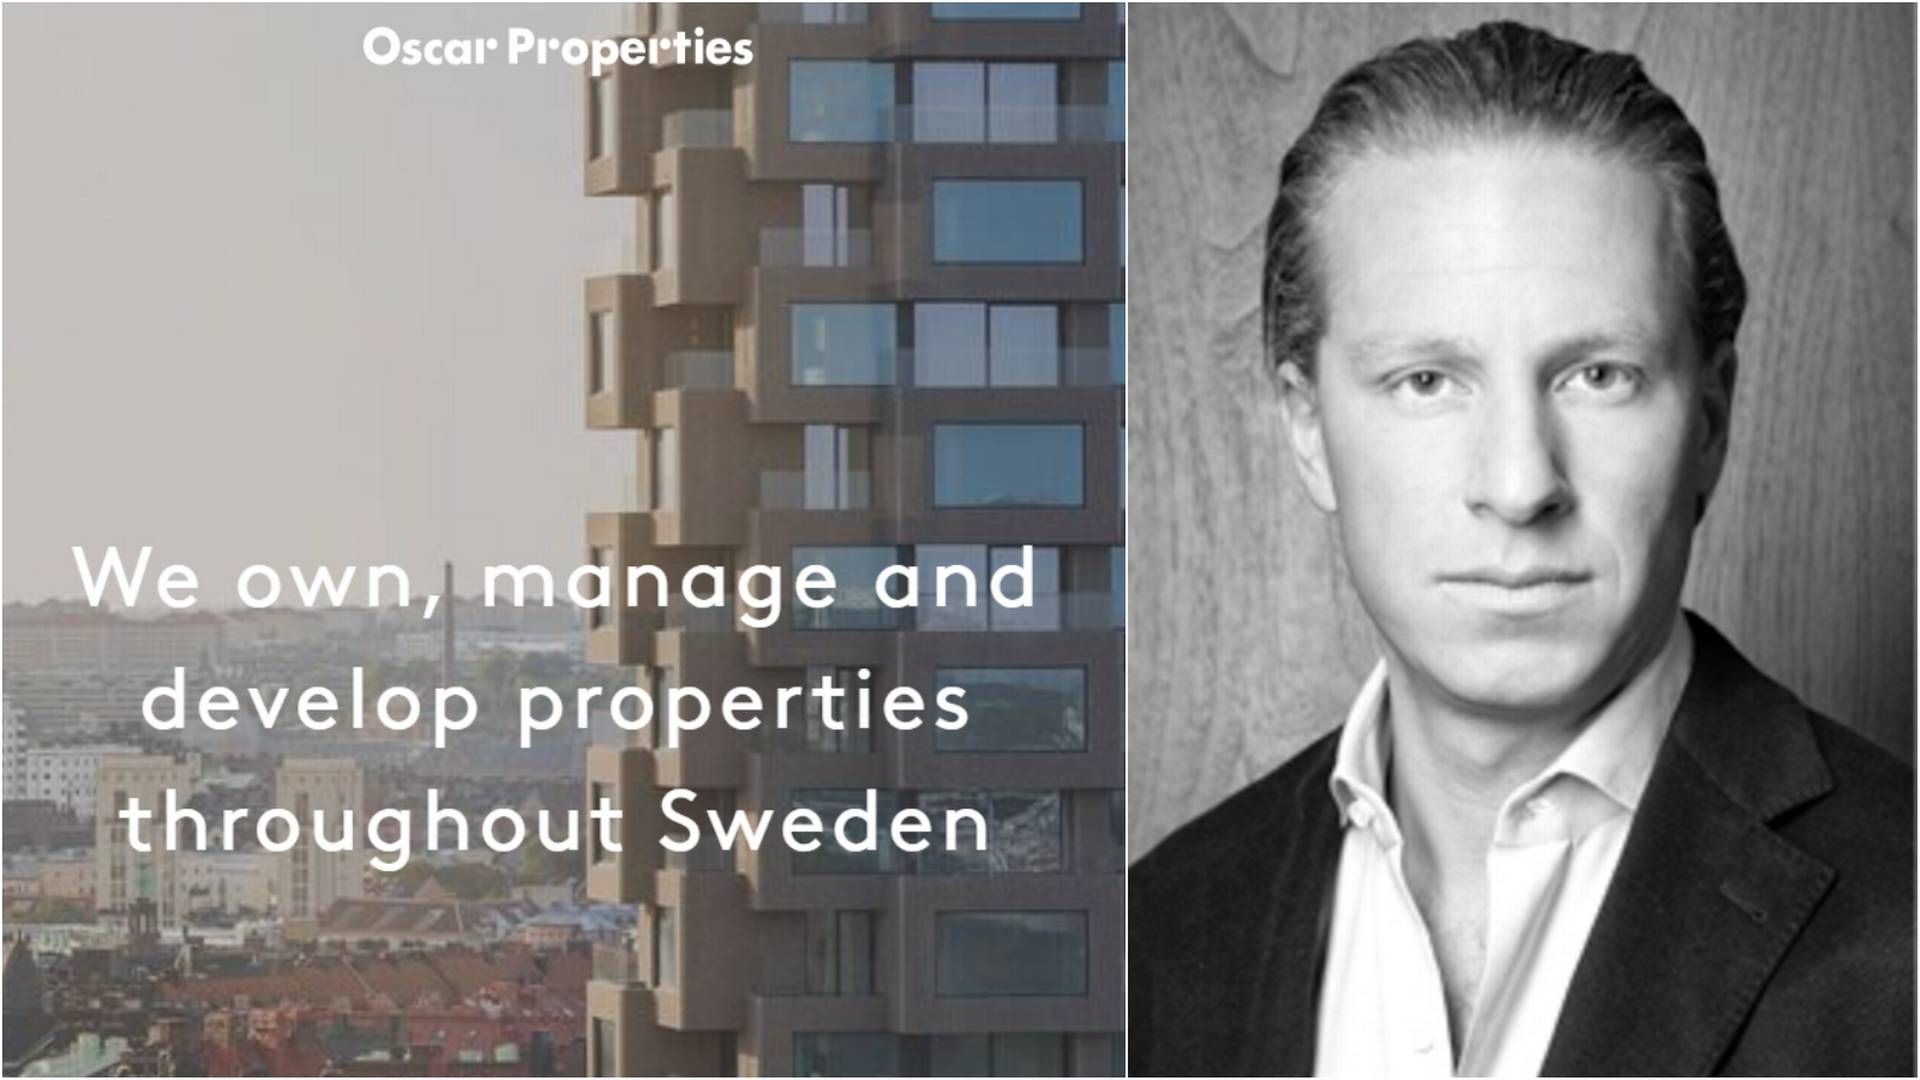 PROBLEMER: Oscar Engelbert og Oscar Properties har havnet i finanspropemer i Sverige. Selskapet raser på børsen, og obligasjonsforfall nærmer seg. | Foto: Oscar Properties